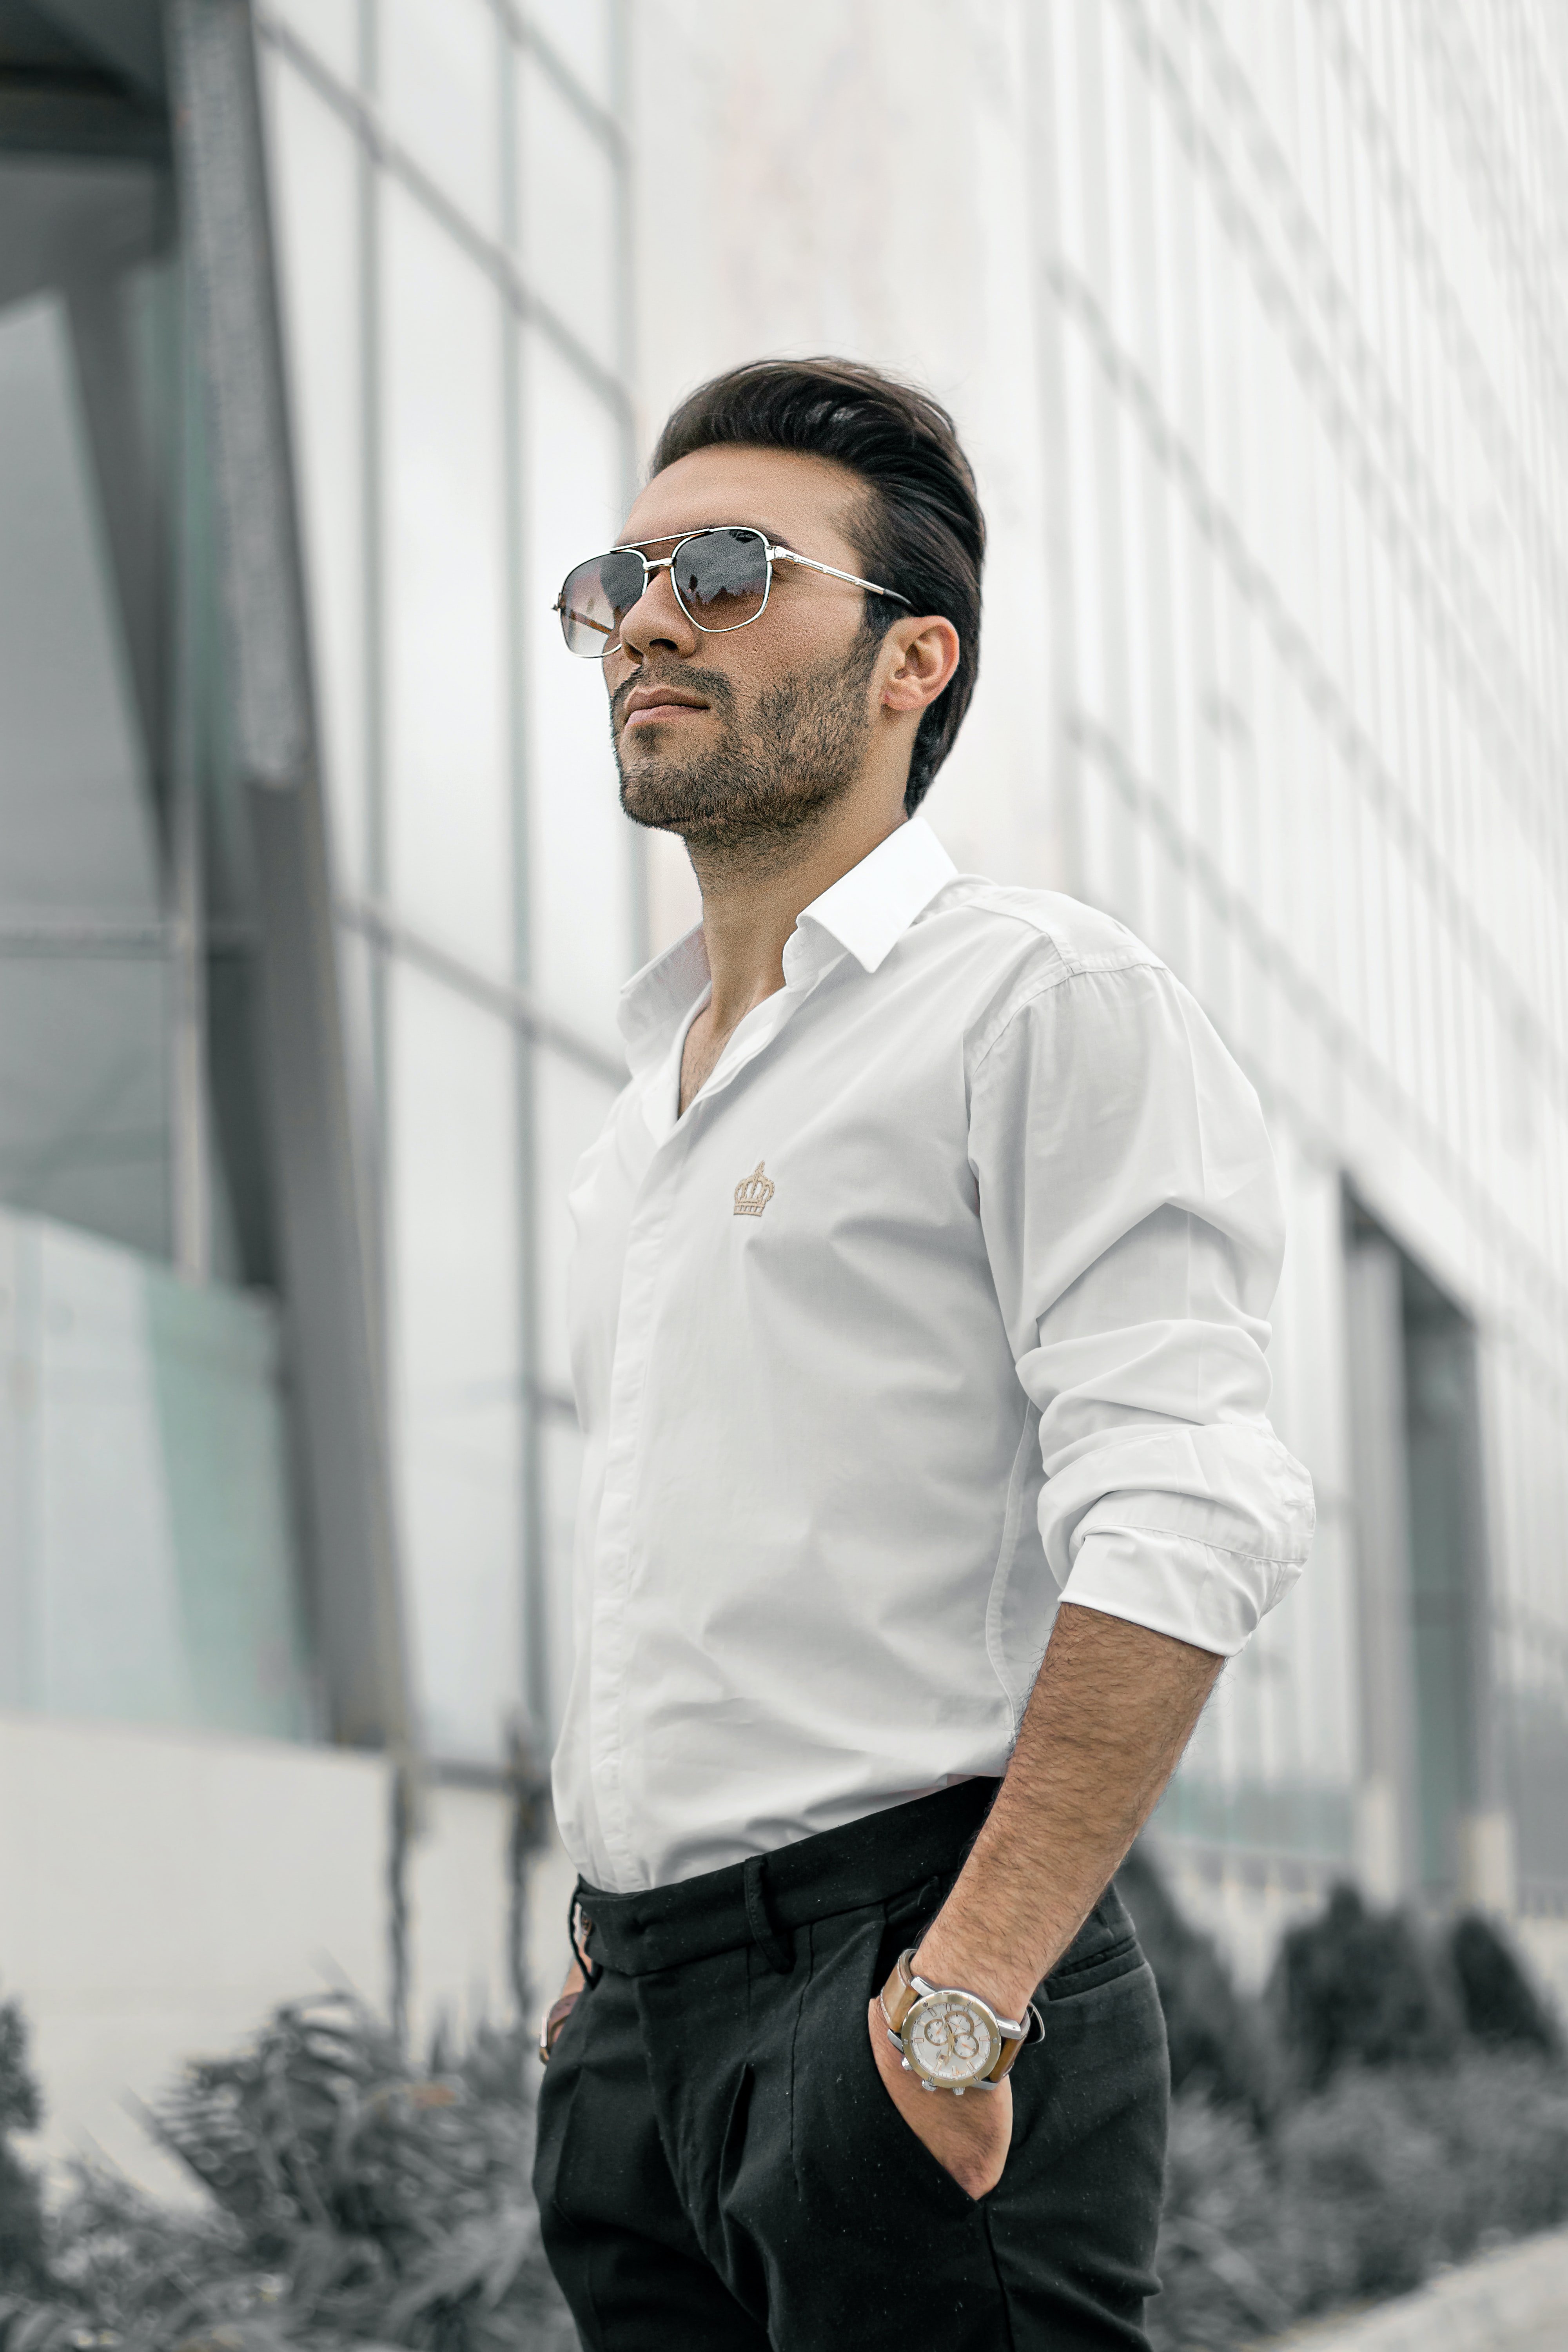 Man wearing sunglasses and a white shirt | Source: Unsplash / Mahdi Bafande